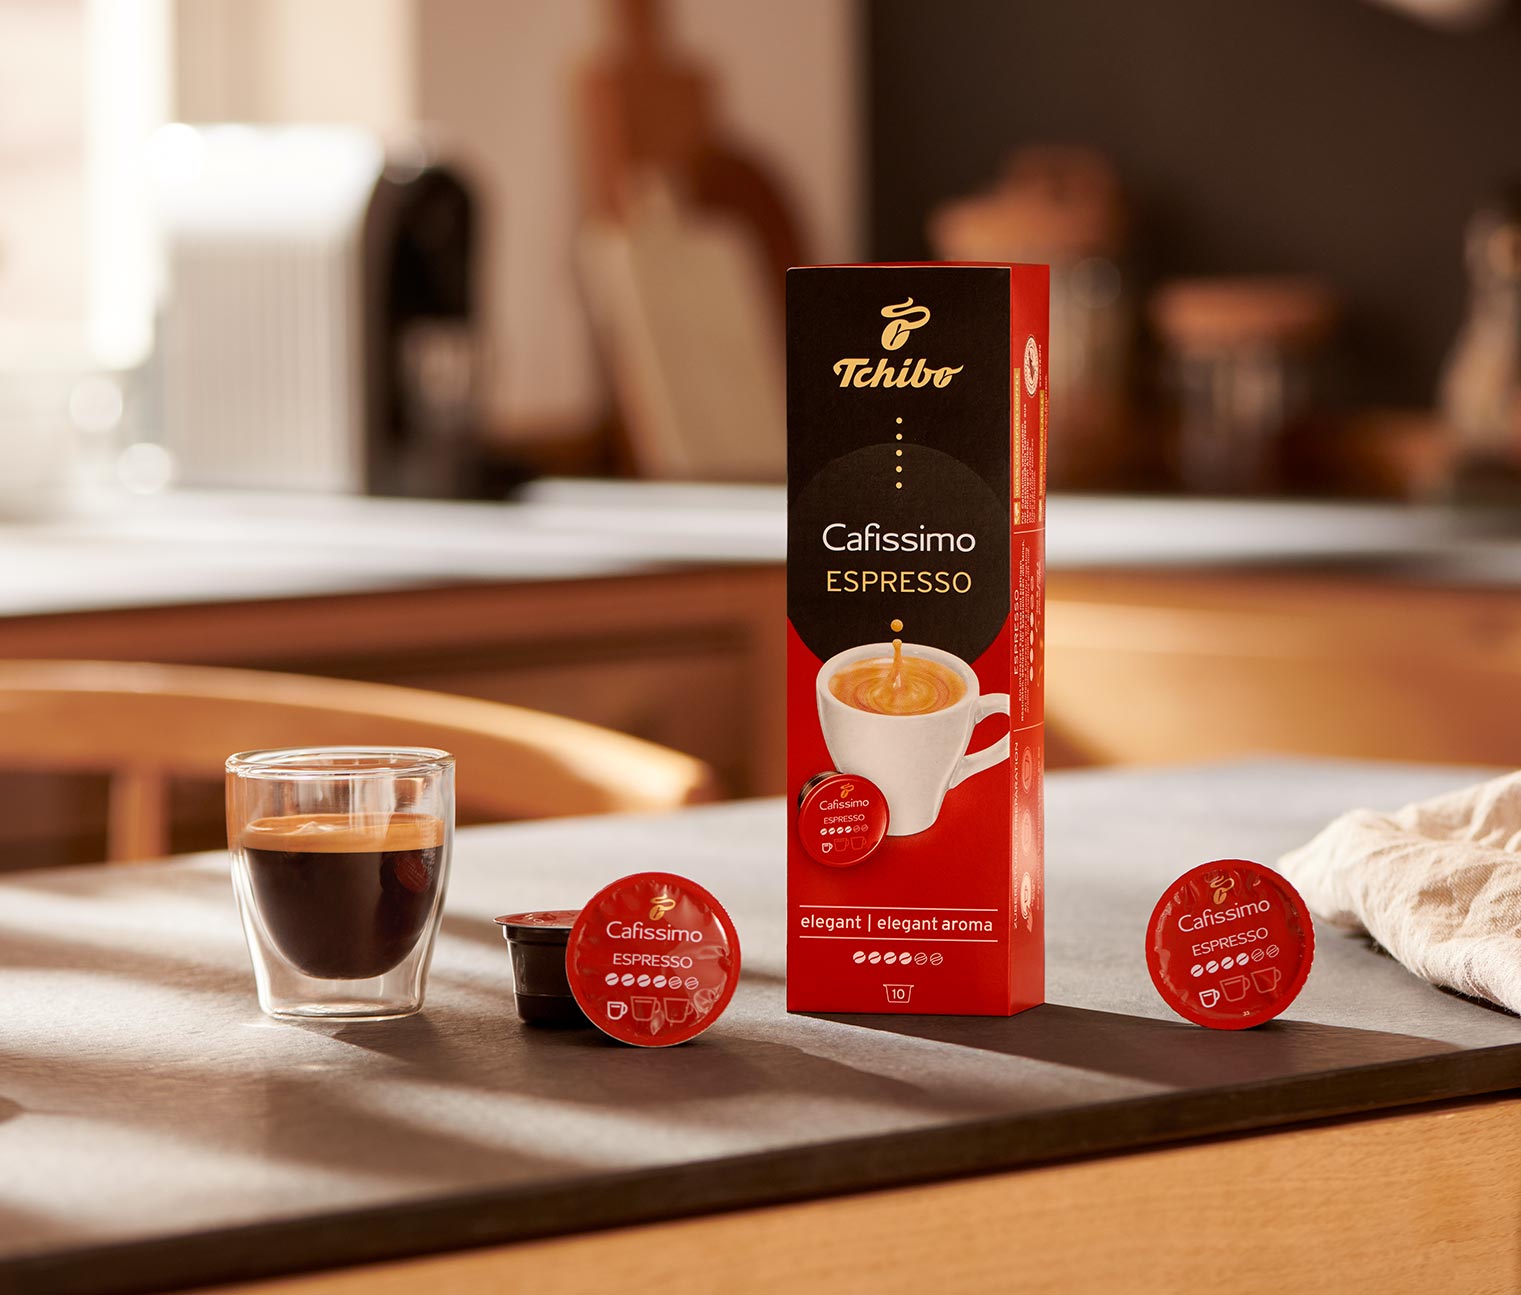 Espresso elegant - 10 db kávékapszula 464517 a Tchibo-nál.